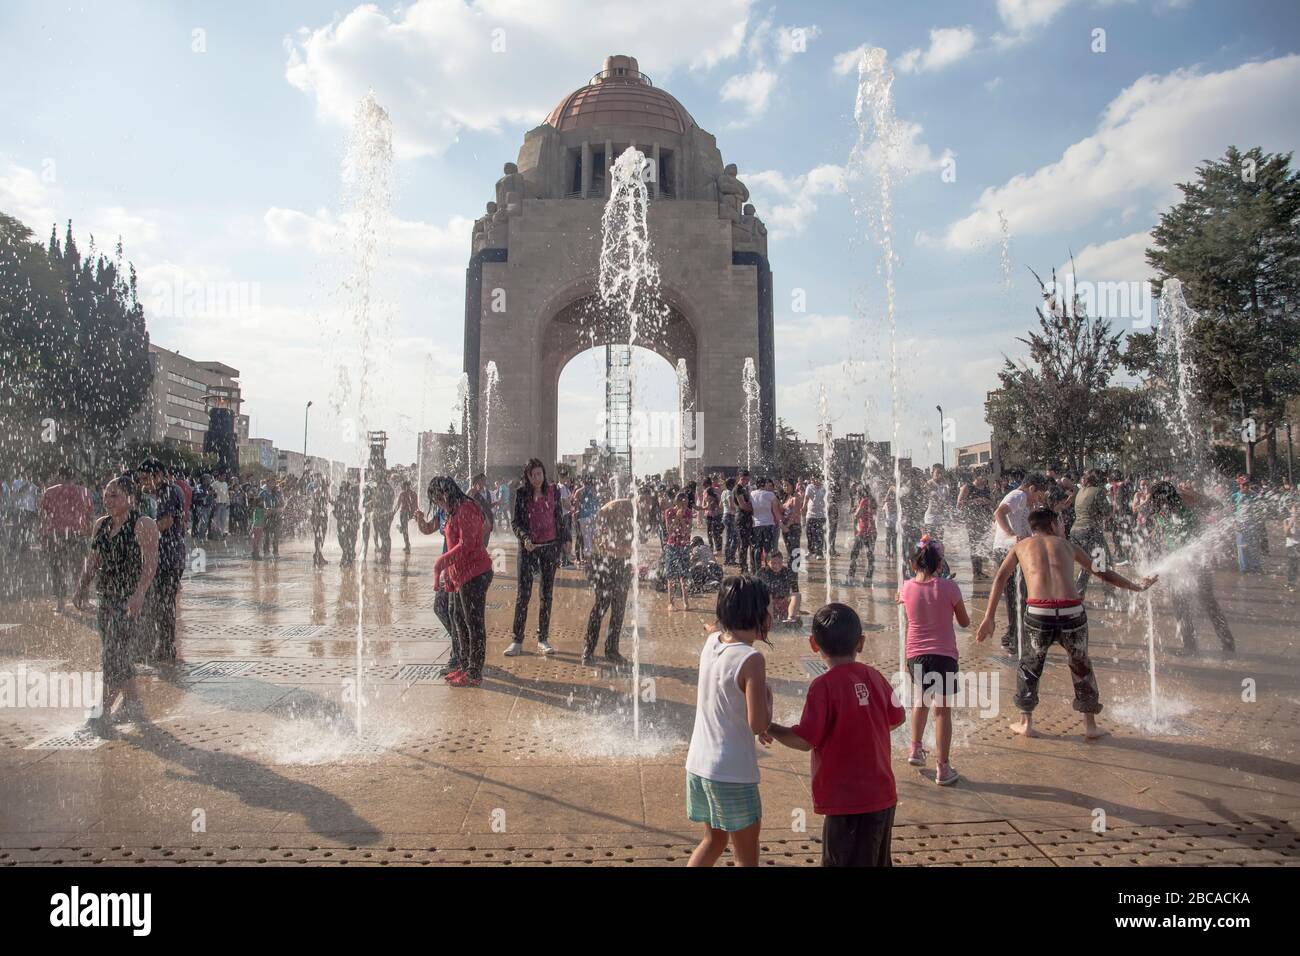 Menschen in Springbrunnen während Hitzewelle, Plaza de la Revolucion, Mexiko-Stadt, Mexiko Stockfoto